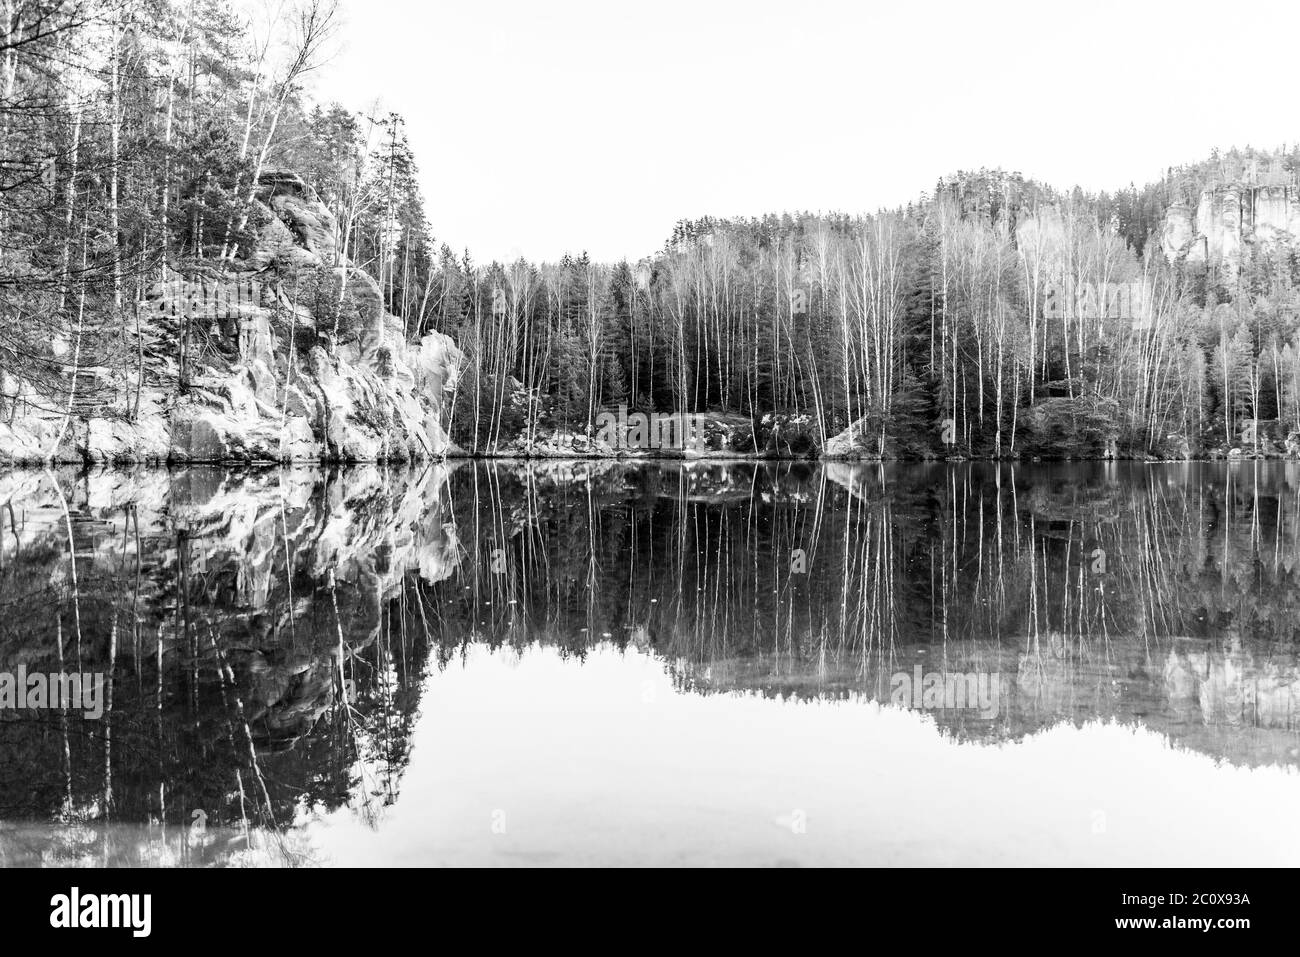 Natursee in Adrspach Felsen an sonnigen Herbsttag. Adrspach-Teplice Sandsteinfelsen Stadt, Tschechische Republik. Schwarzweiß-Bild. Stockfoto